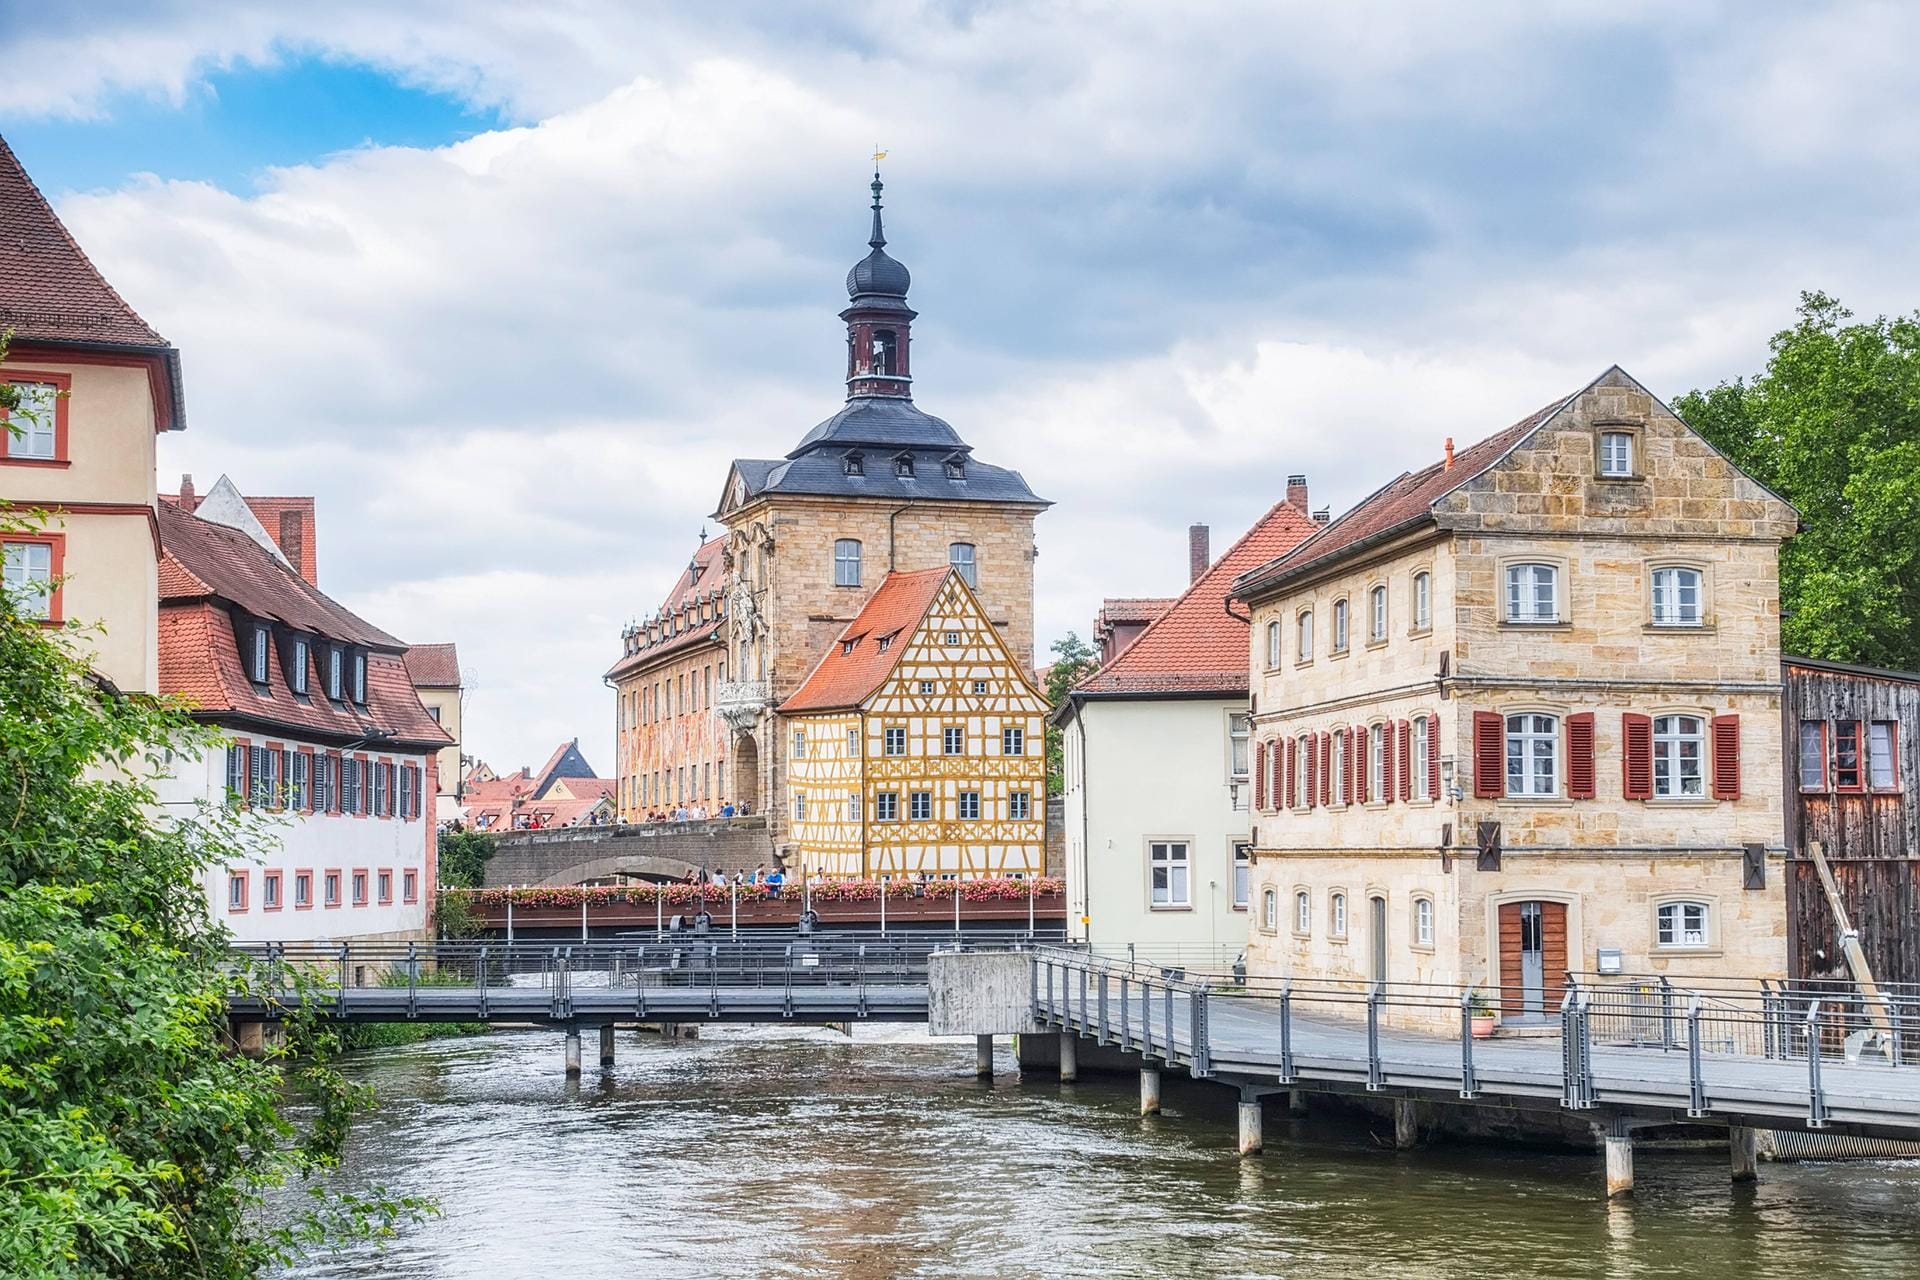 Altstadt von Bamberg: Die Unesco sah in Bamberg eine mitteleuropäische Stadt, aufgebaut auf mittelalterlichen Strukturen – und nahm deshalb knapp 142 Hektar des Ortes in ihre Liste auf.